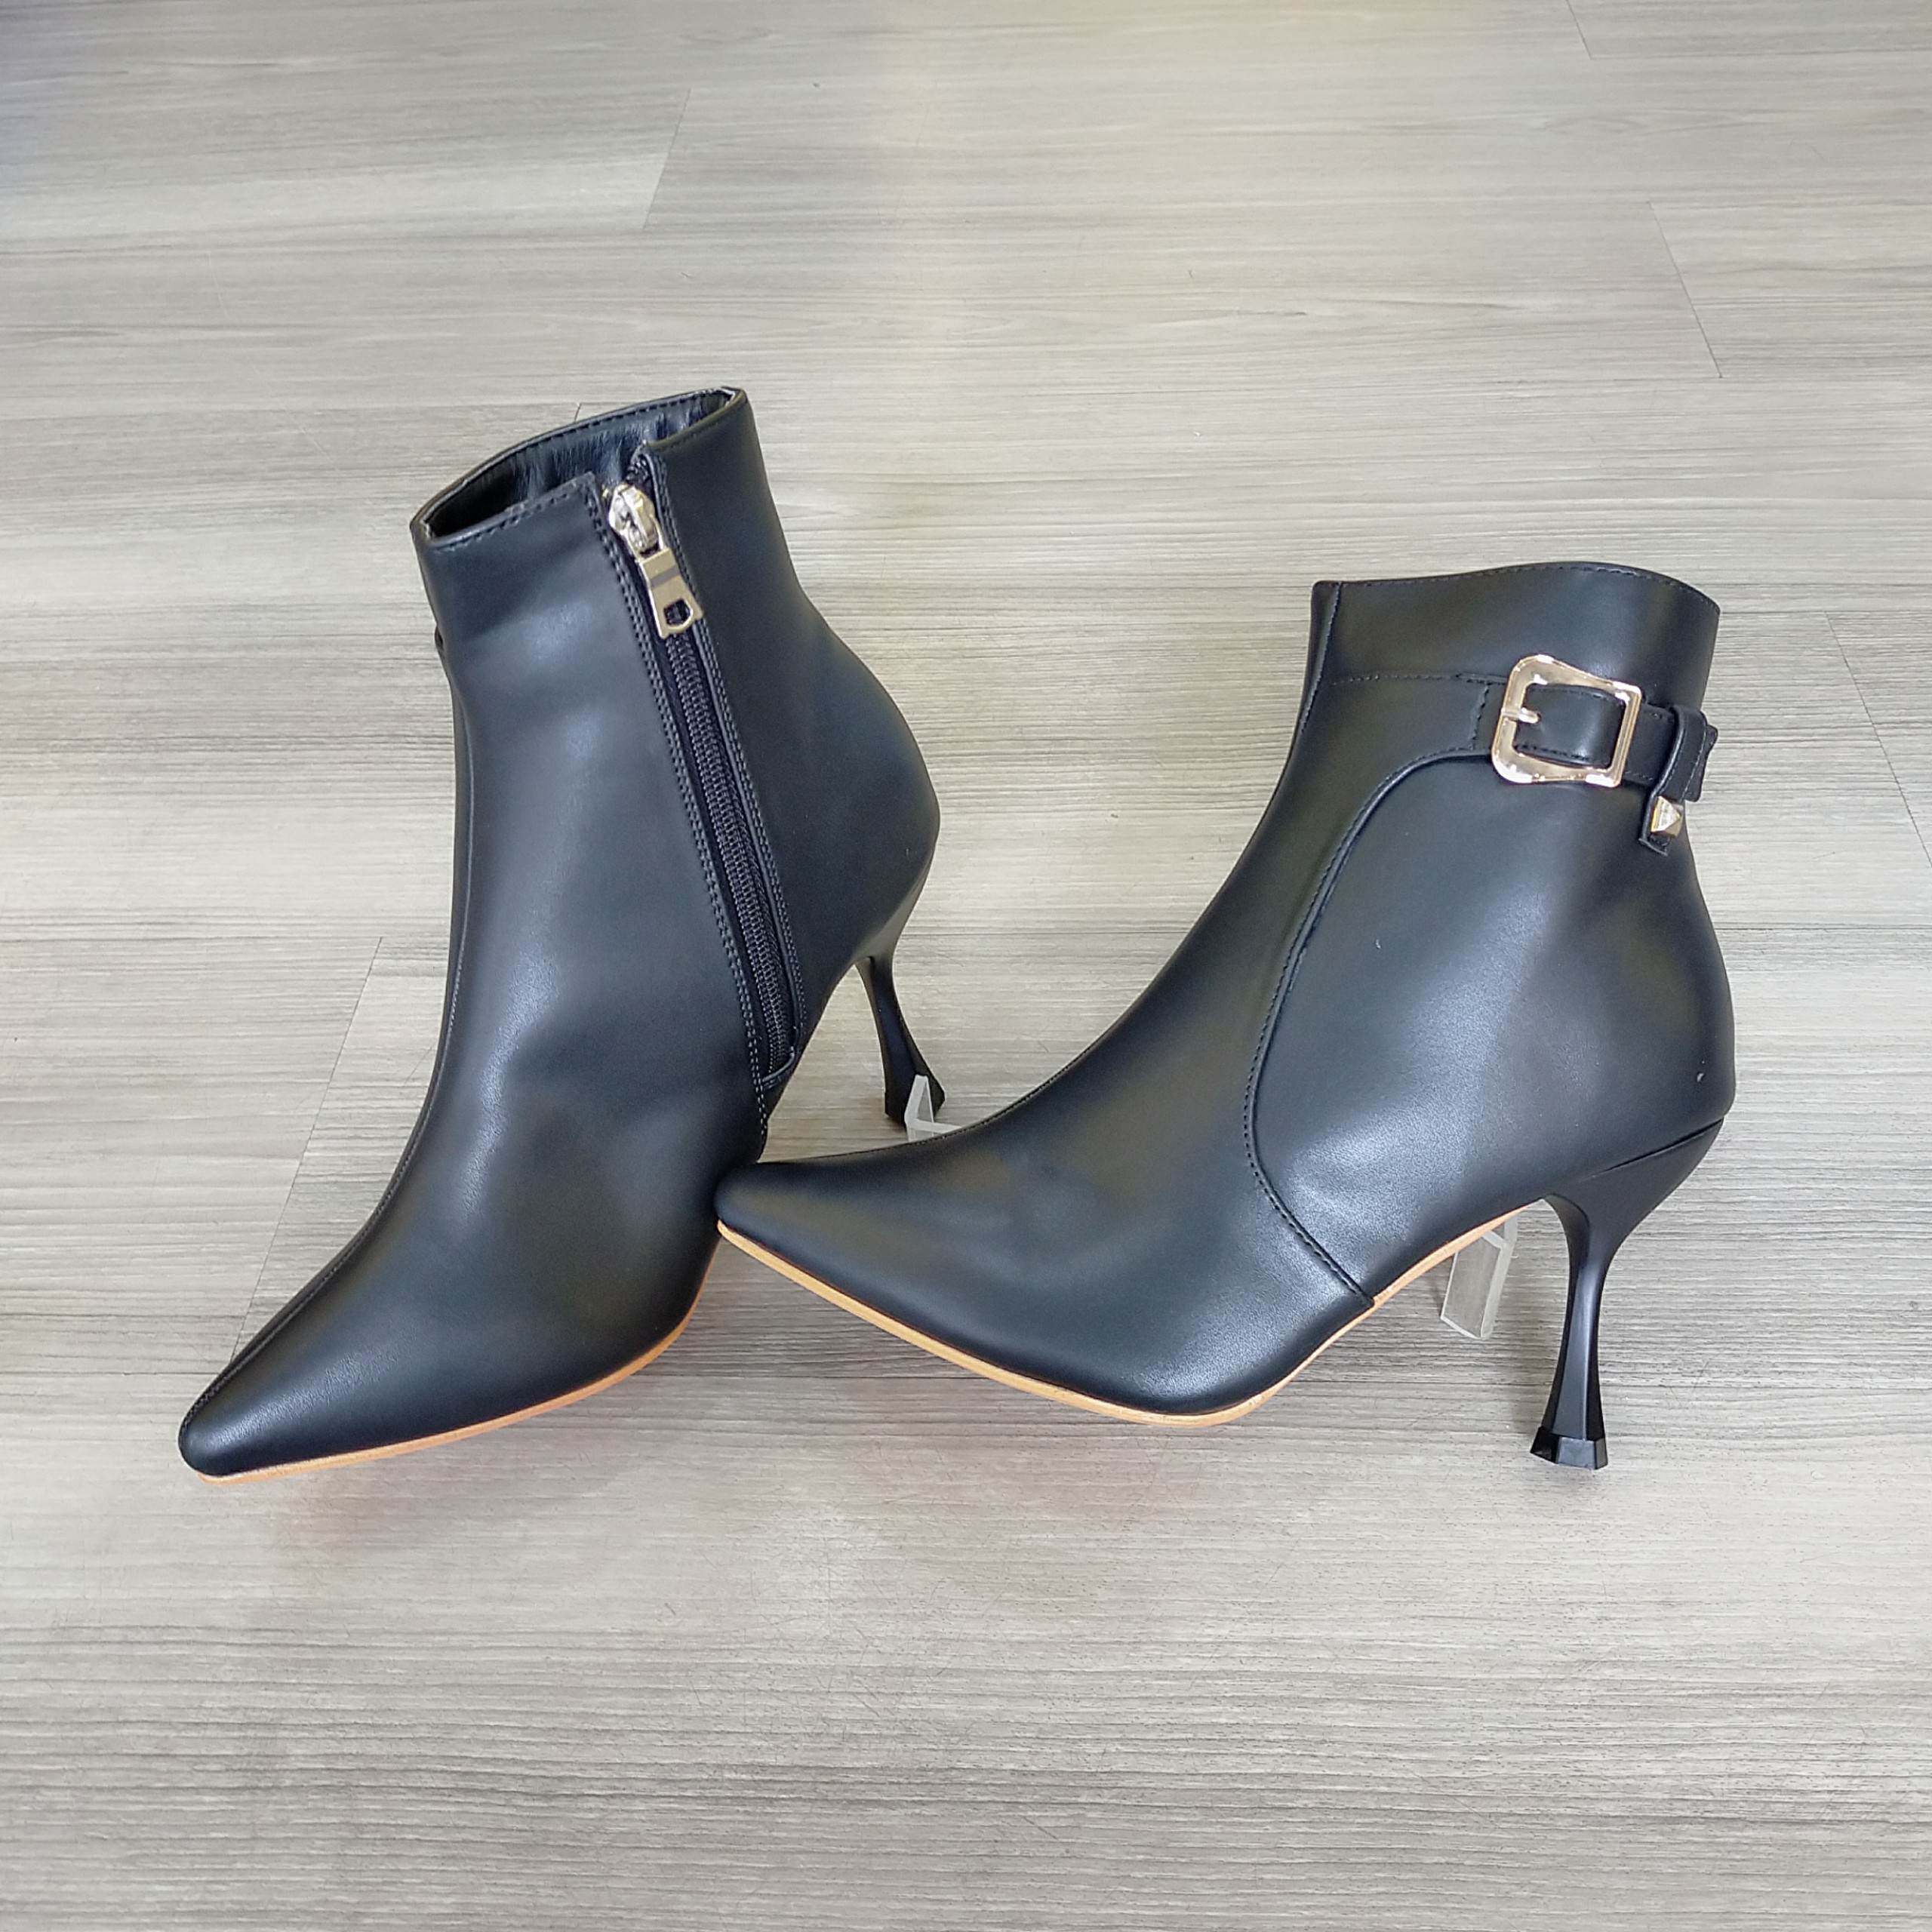 Boots thời trang nữ cổ cao, da lì cao cấp ROSATA RO288 7p gót nhọn - đen, trắng - HÀNG VIỆT NAM - BKSTORE